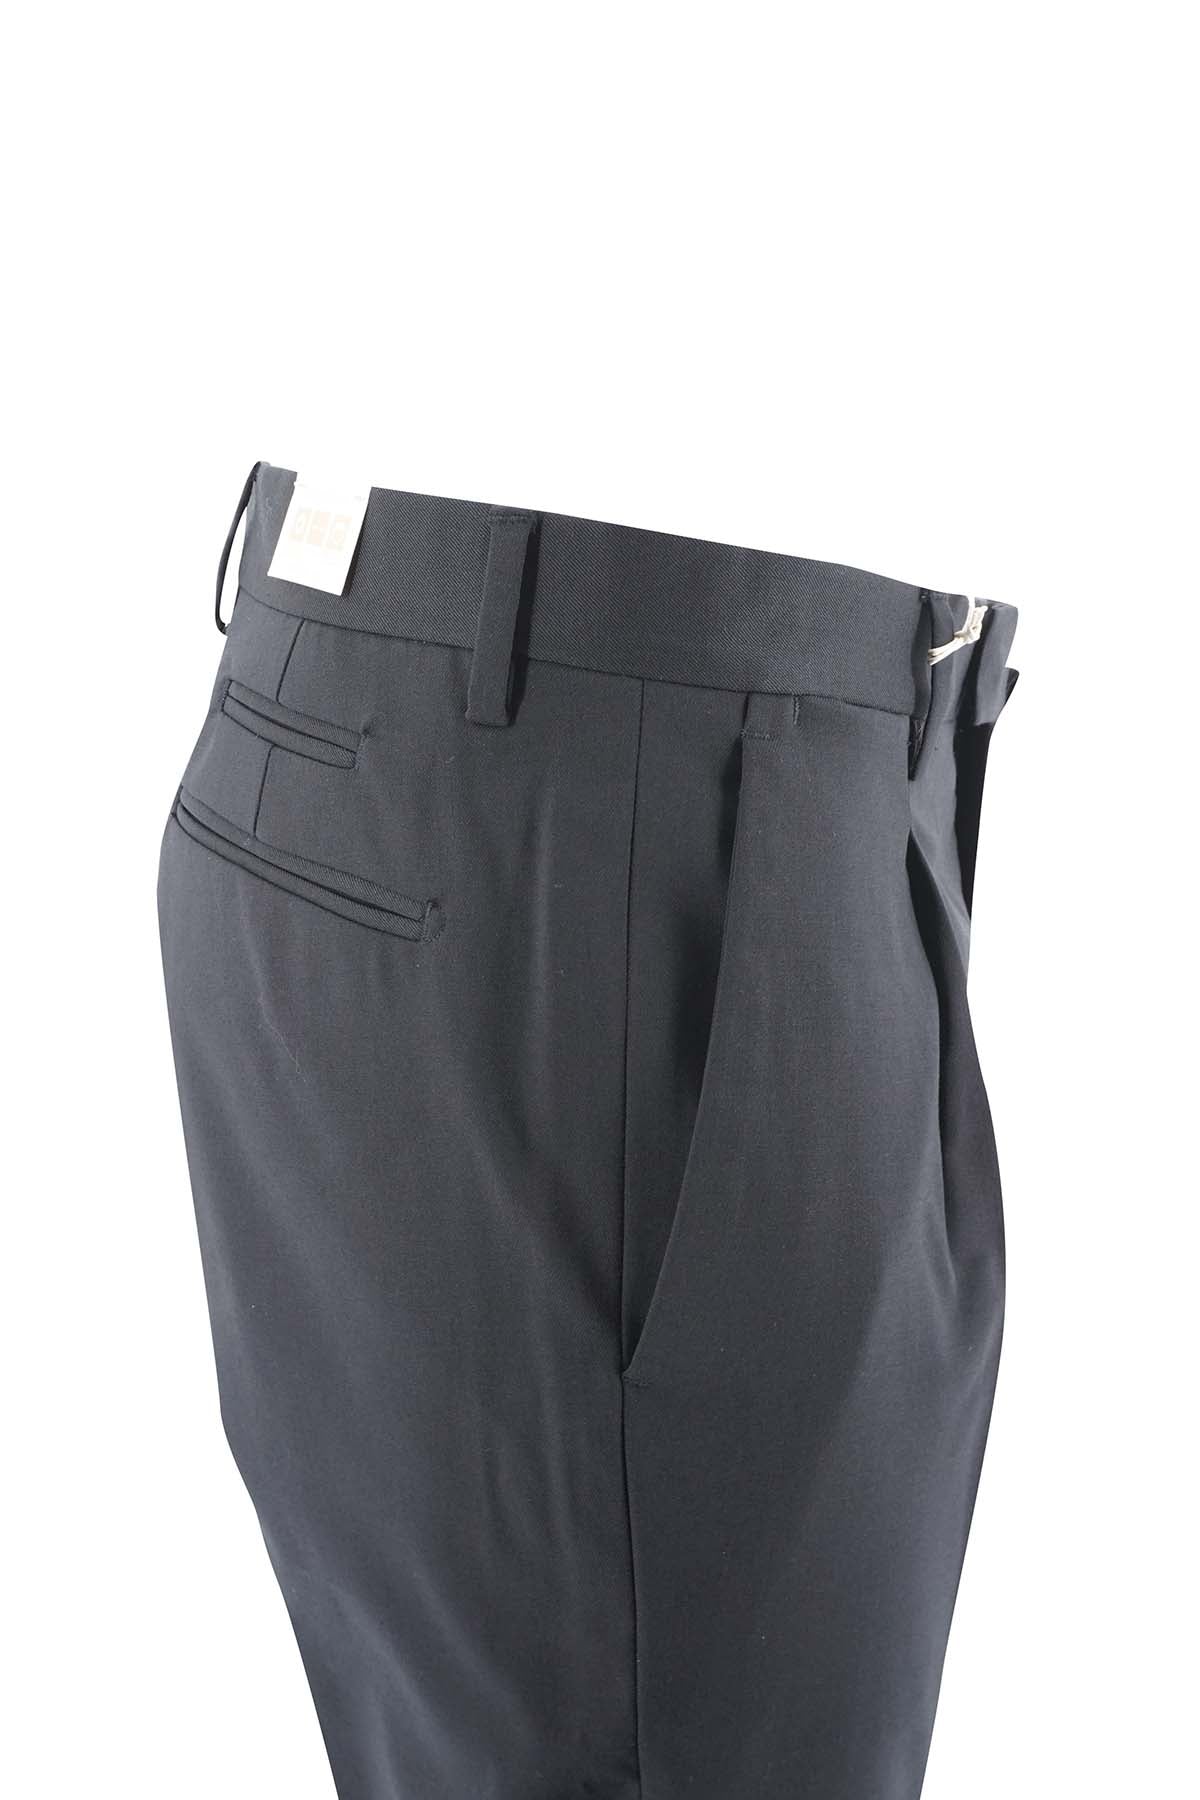 Pantalone Briglia Slim Fit / Nero - Ideal Moda